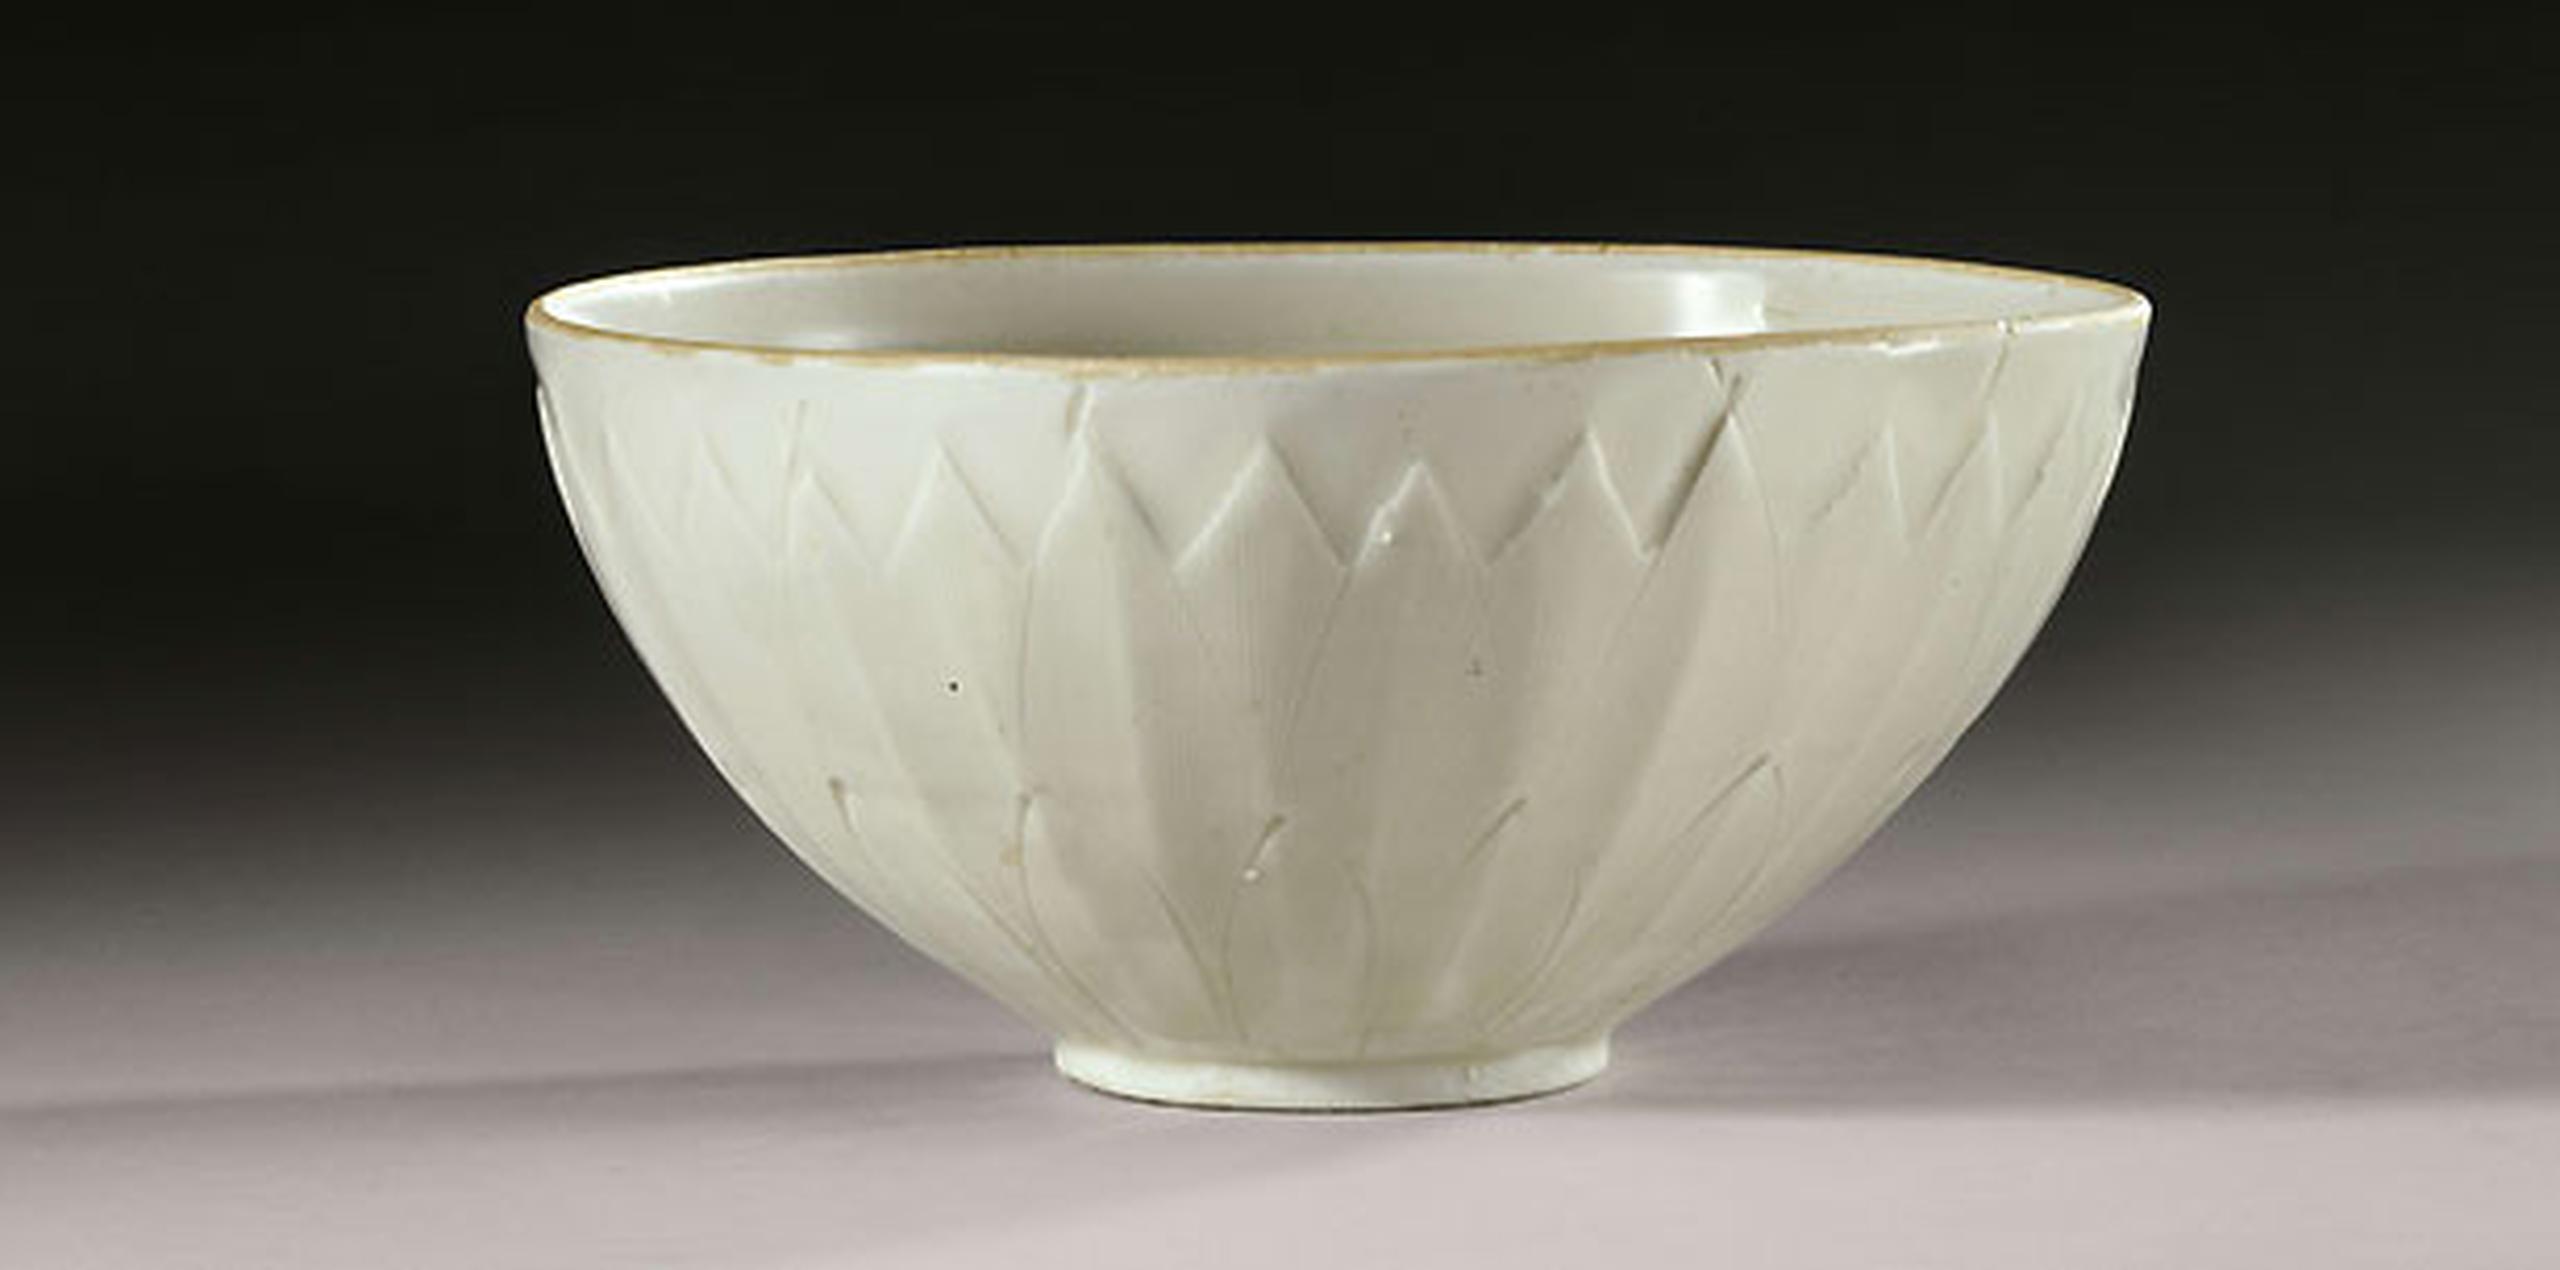 El bol, "un destacado y excepcionalmente bello ejemplo" de la cerámica de la dinastía Song, fue comprado en el verano de 2007 por $3 por una familia del estado de Nueva York, que entonces desconocía que había dado "con un tesoro milenario", según explicó hoy a Efe la casa de subastas. (AFP)